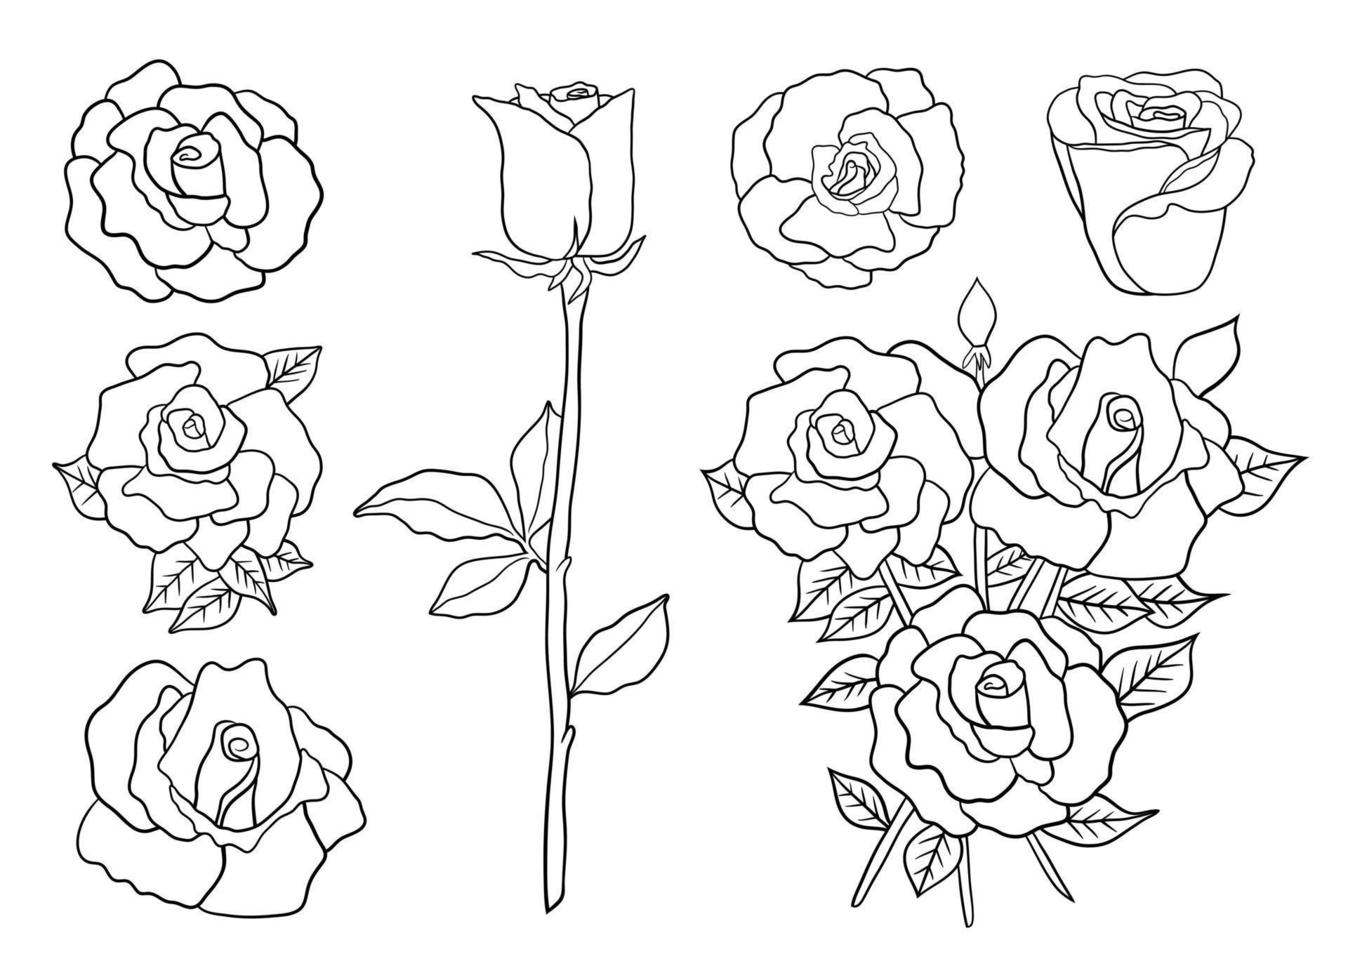 Rosenvektorentwurfsillustration lokalisiert auf weißem Hintergrund vektor